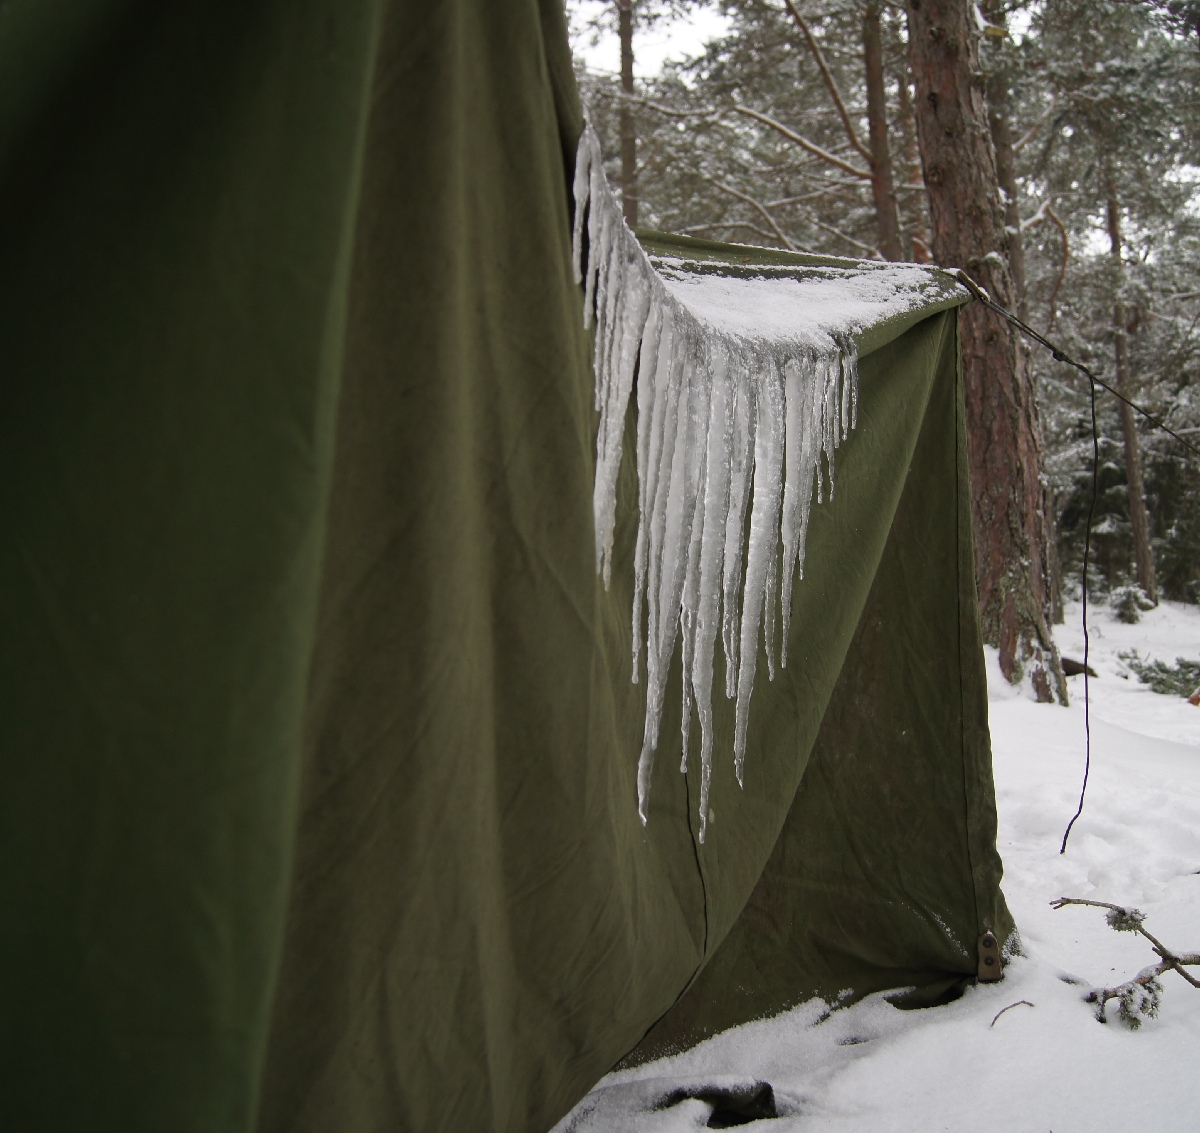 Jääpurikad rootsi sõjaväe telgi küljes. Matsirand talvel. Puhka Eestis, Matsi rand.